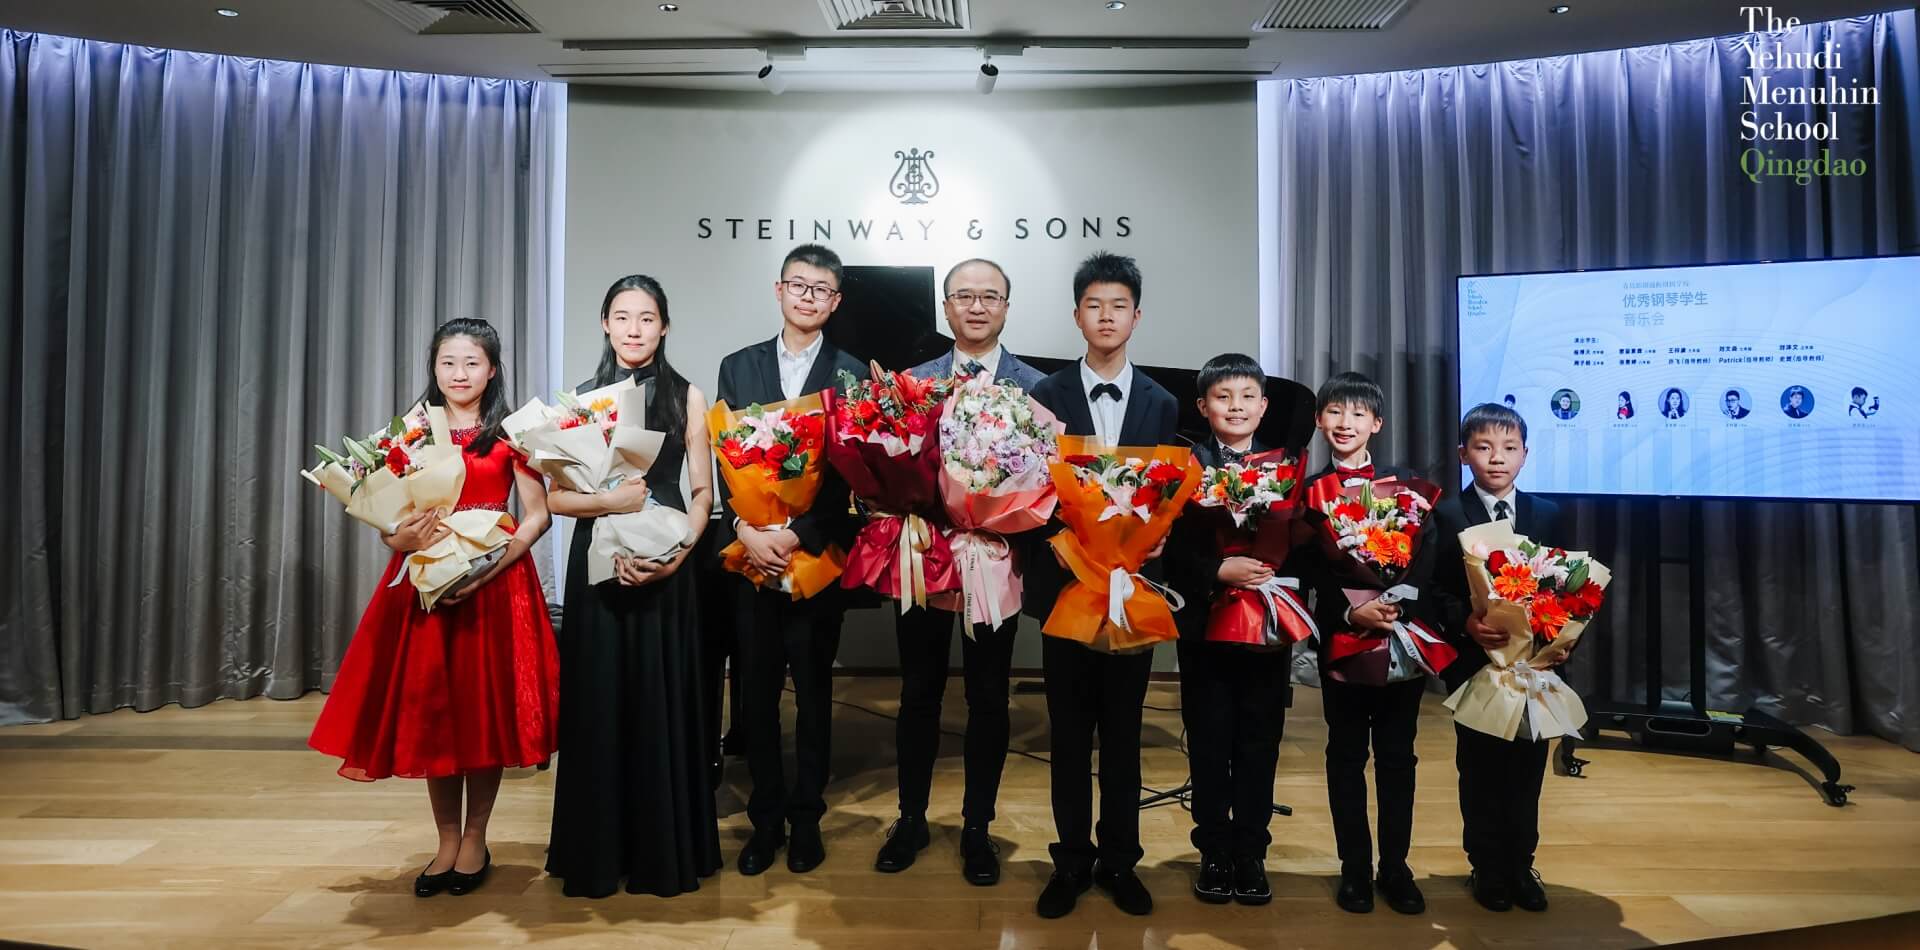 我校钢琴学生音乐会在北京施坦威之家上演